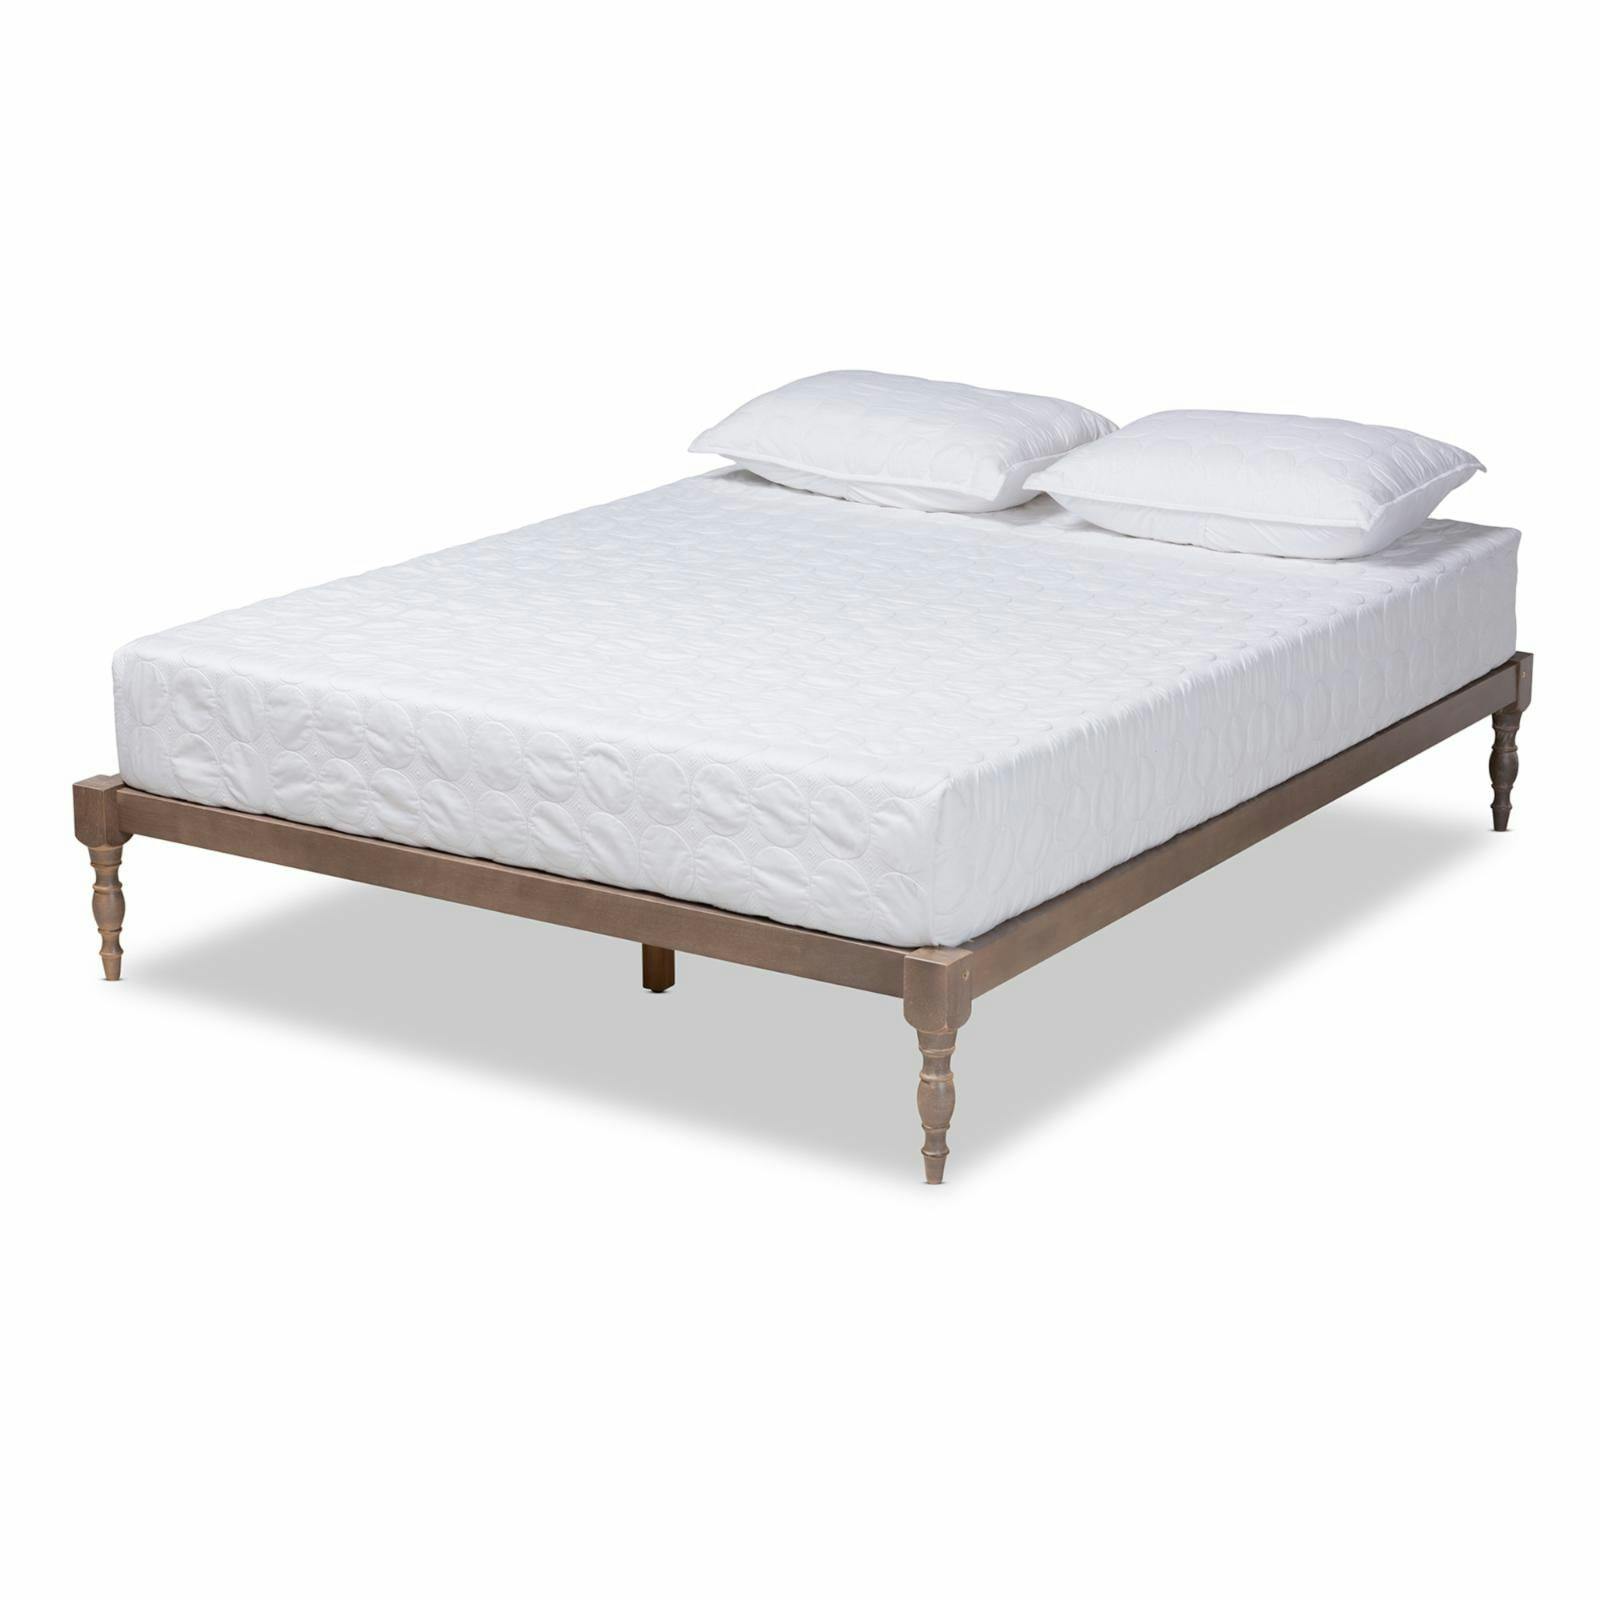 Iseline Antique Grey Solid Rubberwood Full Platform Bed Frame